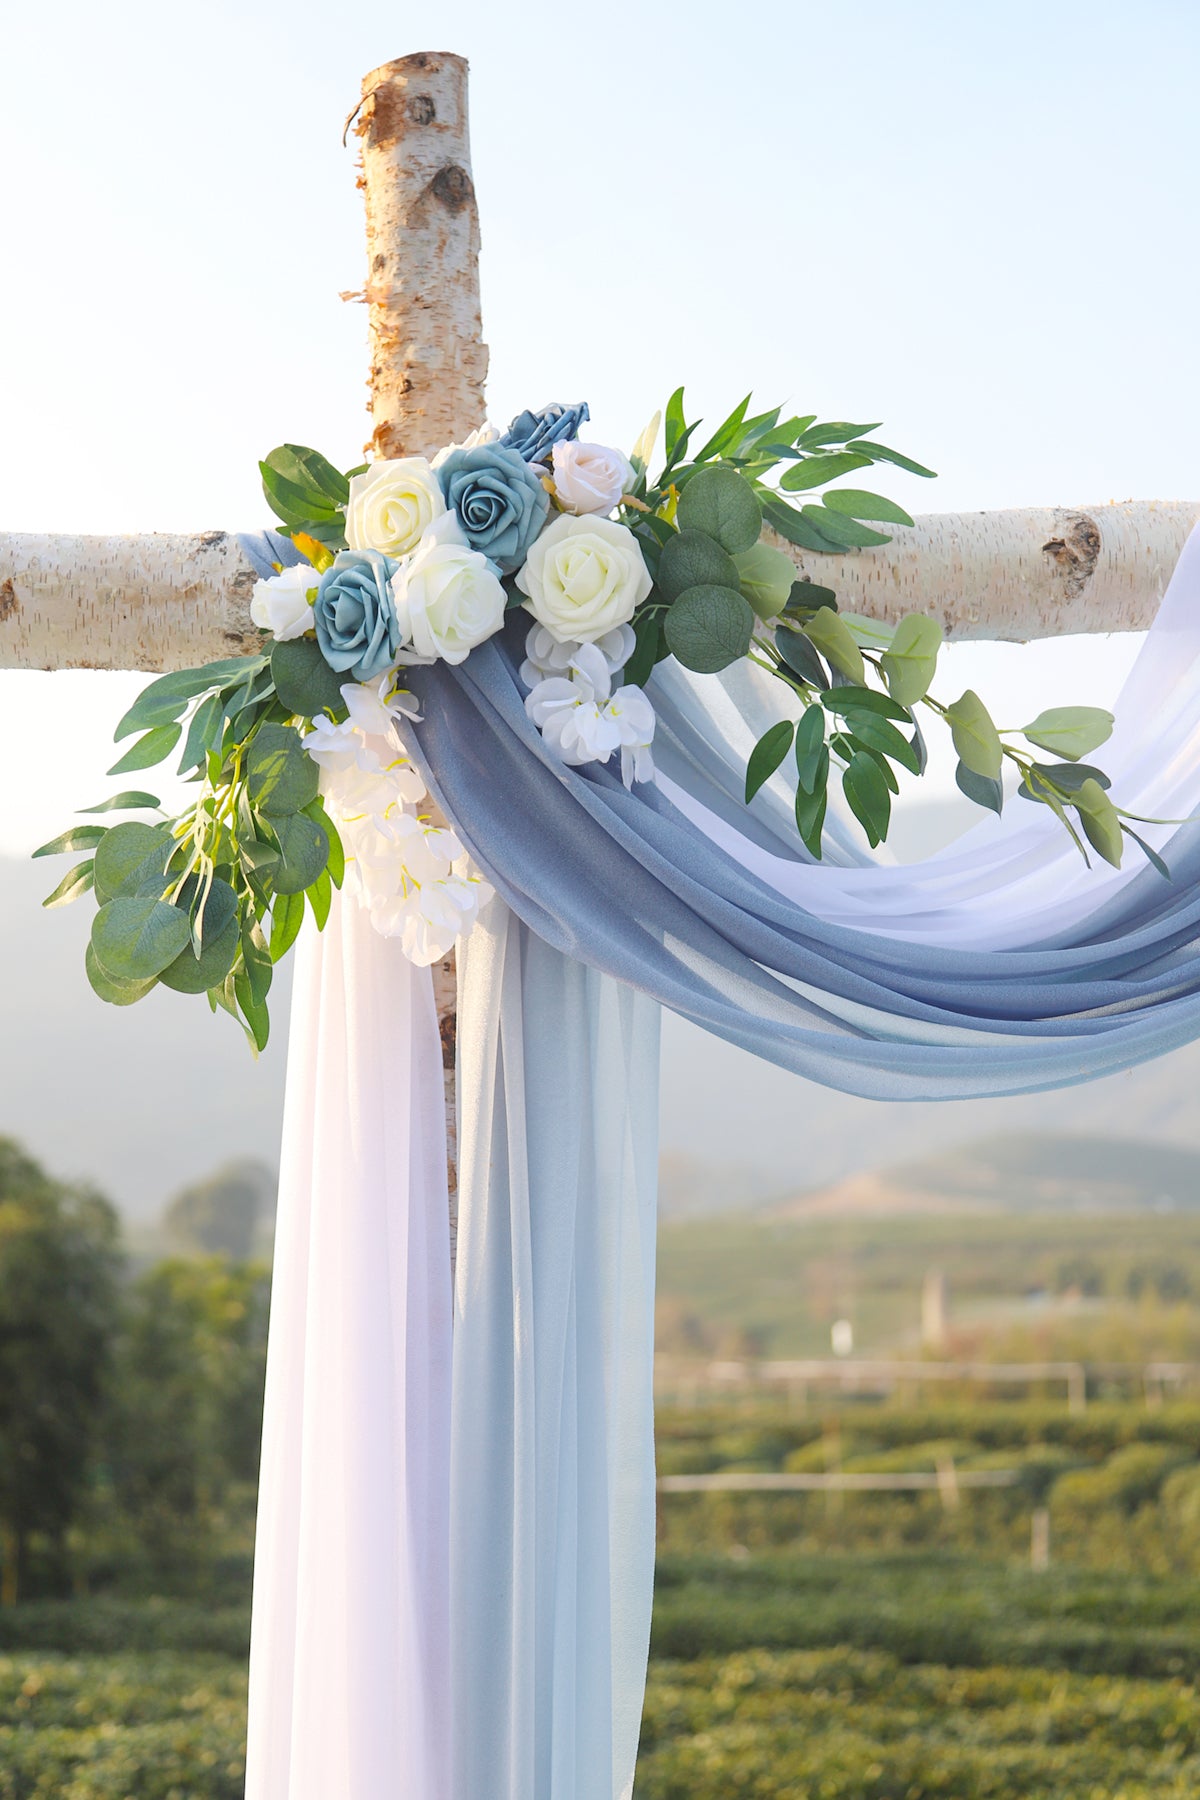 Artificial Flowers - Wedding Flower Box Set - DIY Bridal Bouquet, Centerpieces, Aisle Flower Decor - Dusty Blue & White